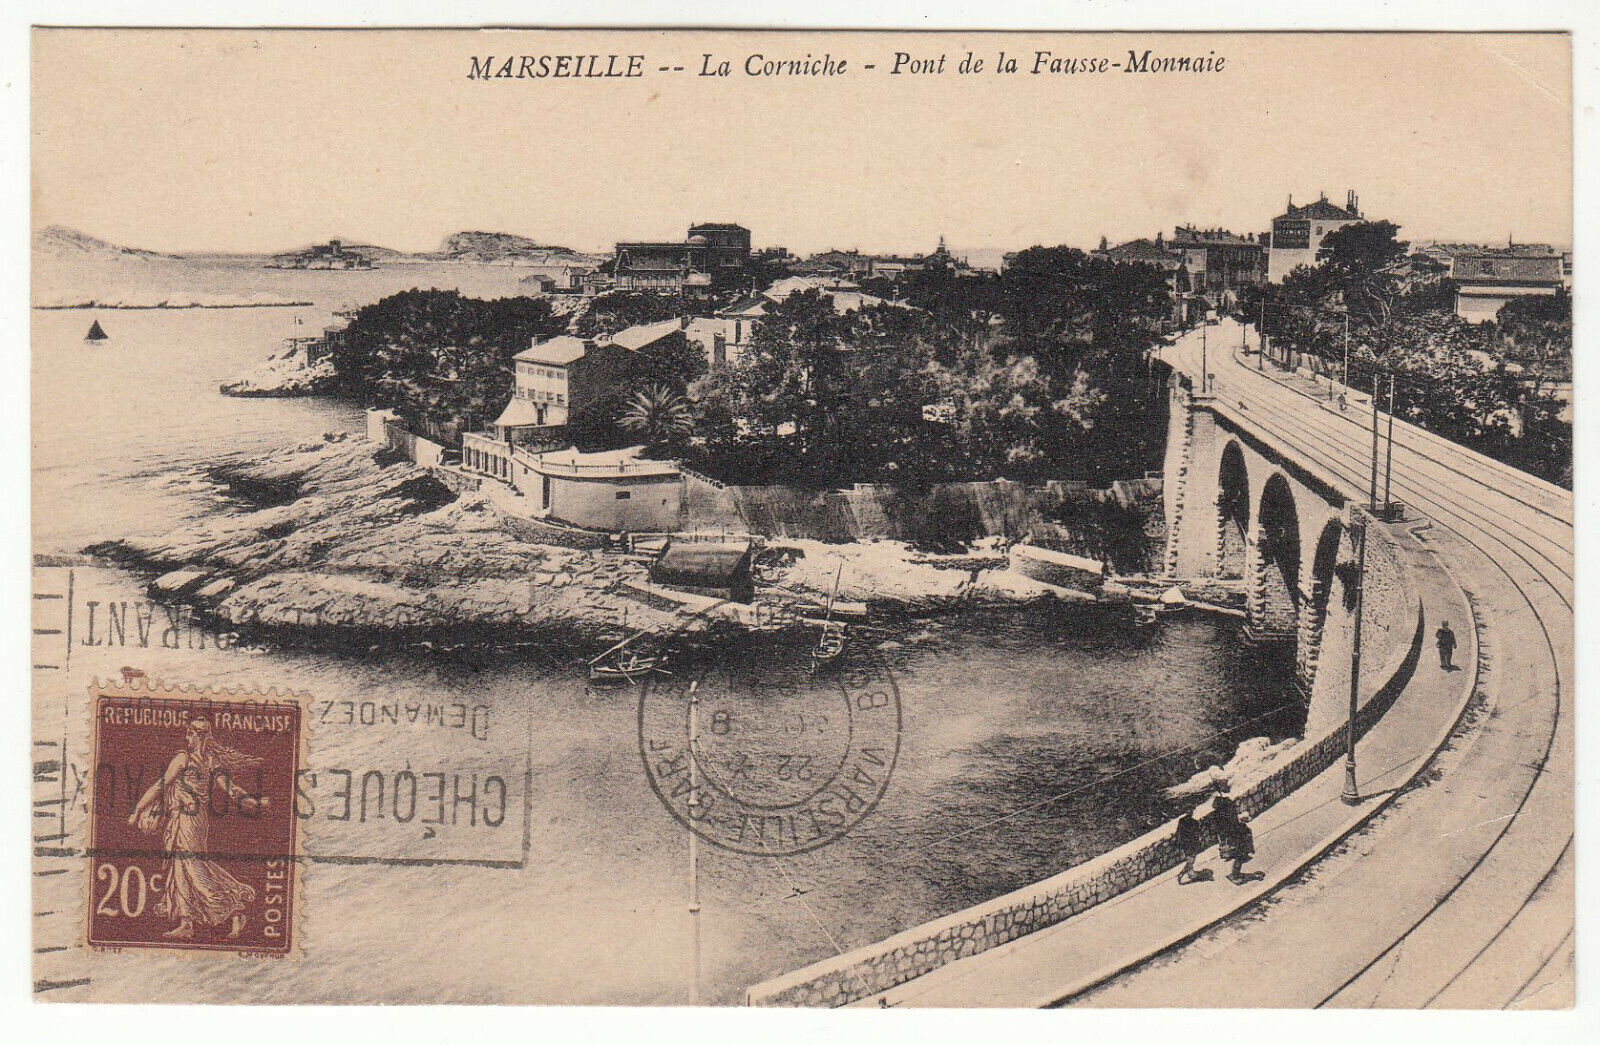 CARTE POSTALE MARSEILLE LA CORNICHE PONT DE LA FAUSSE MONNAIE 123973968411